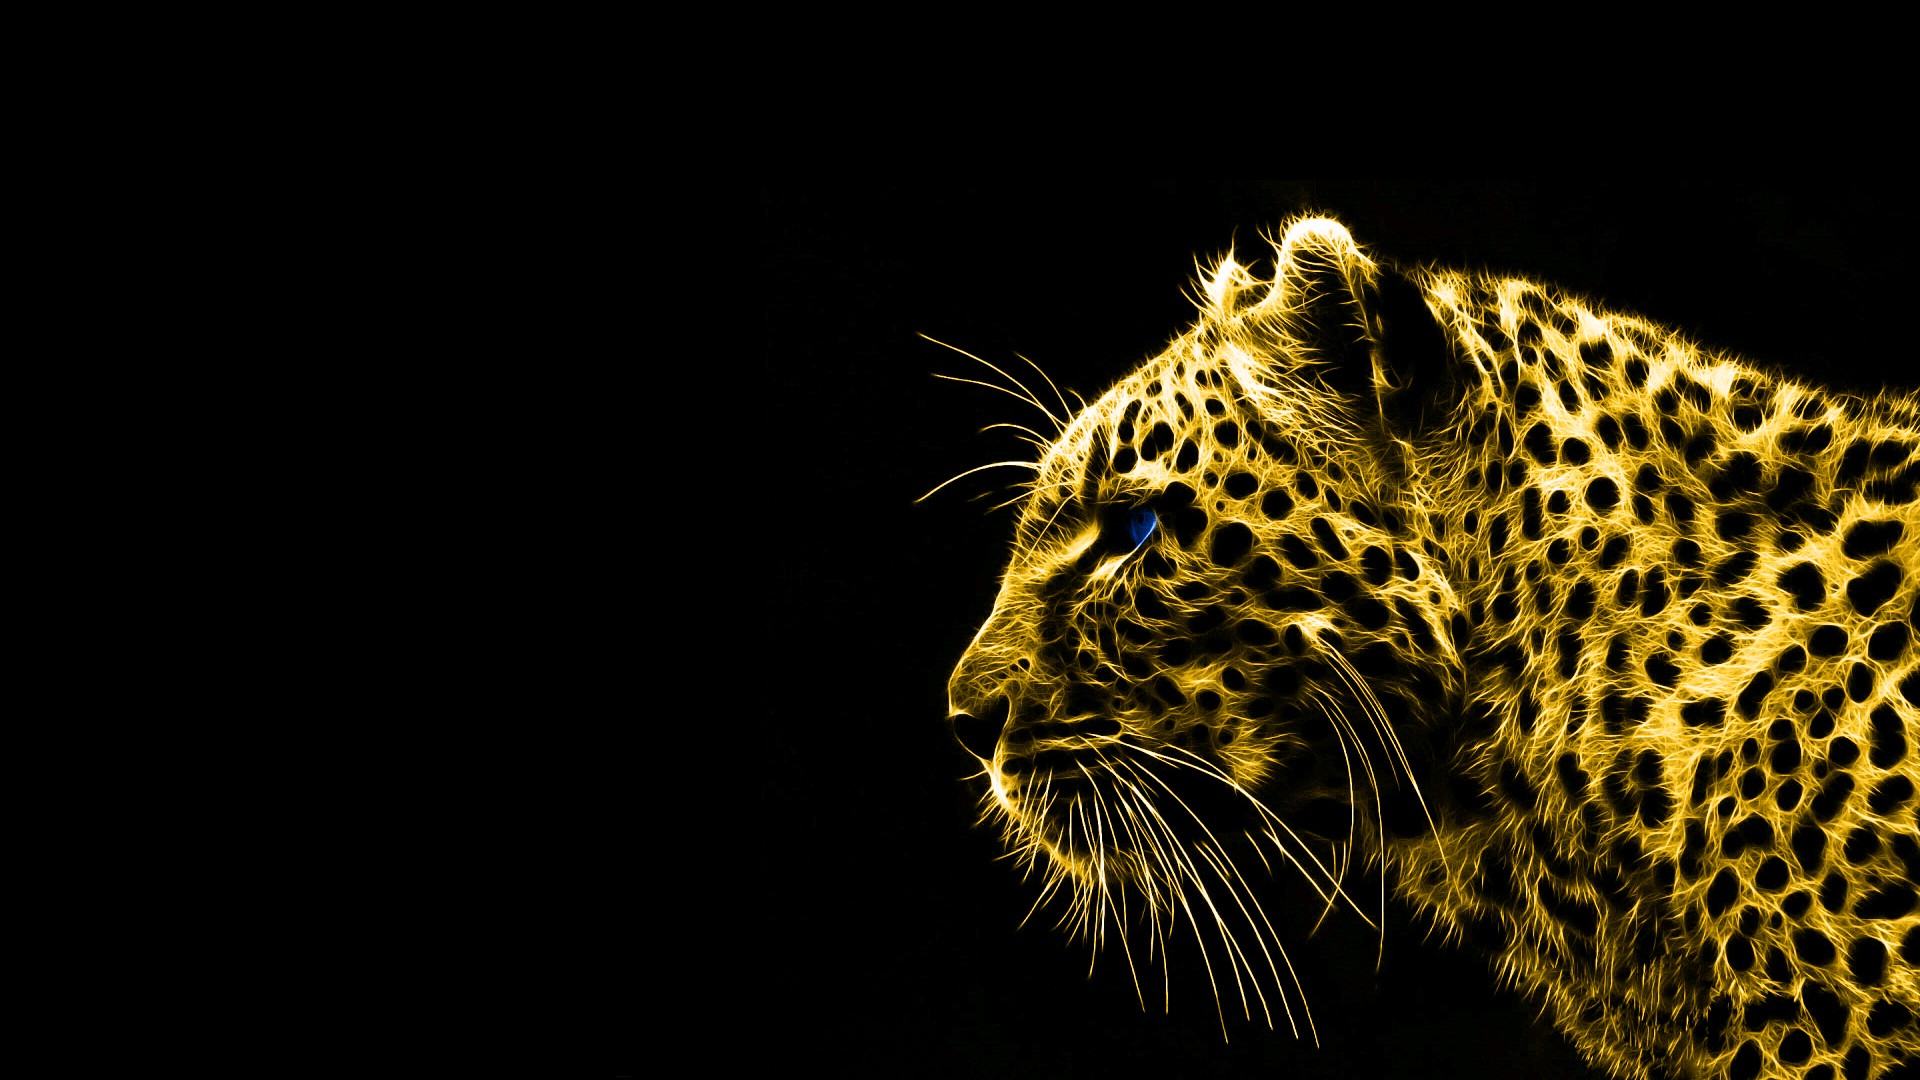 黒と金の壁紙,野生動物,ジャガー,ヒョウ,陸生動物,ネコ科